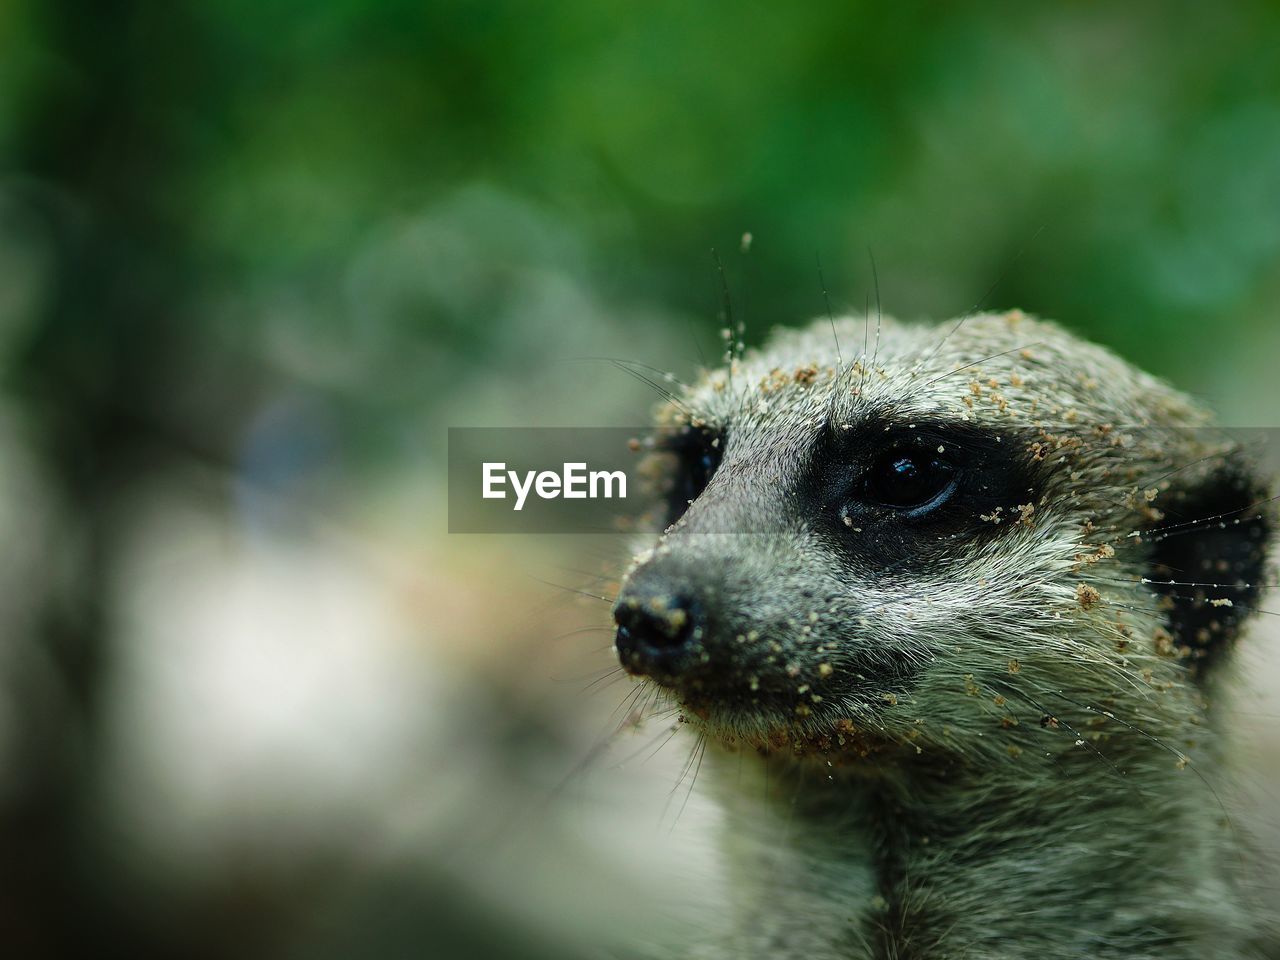 Close-up of meerkat face